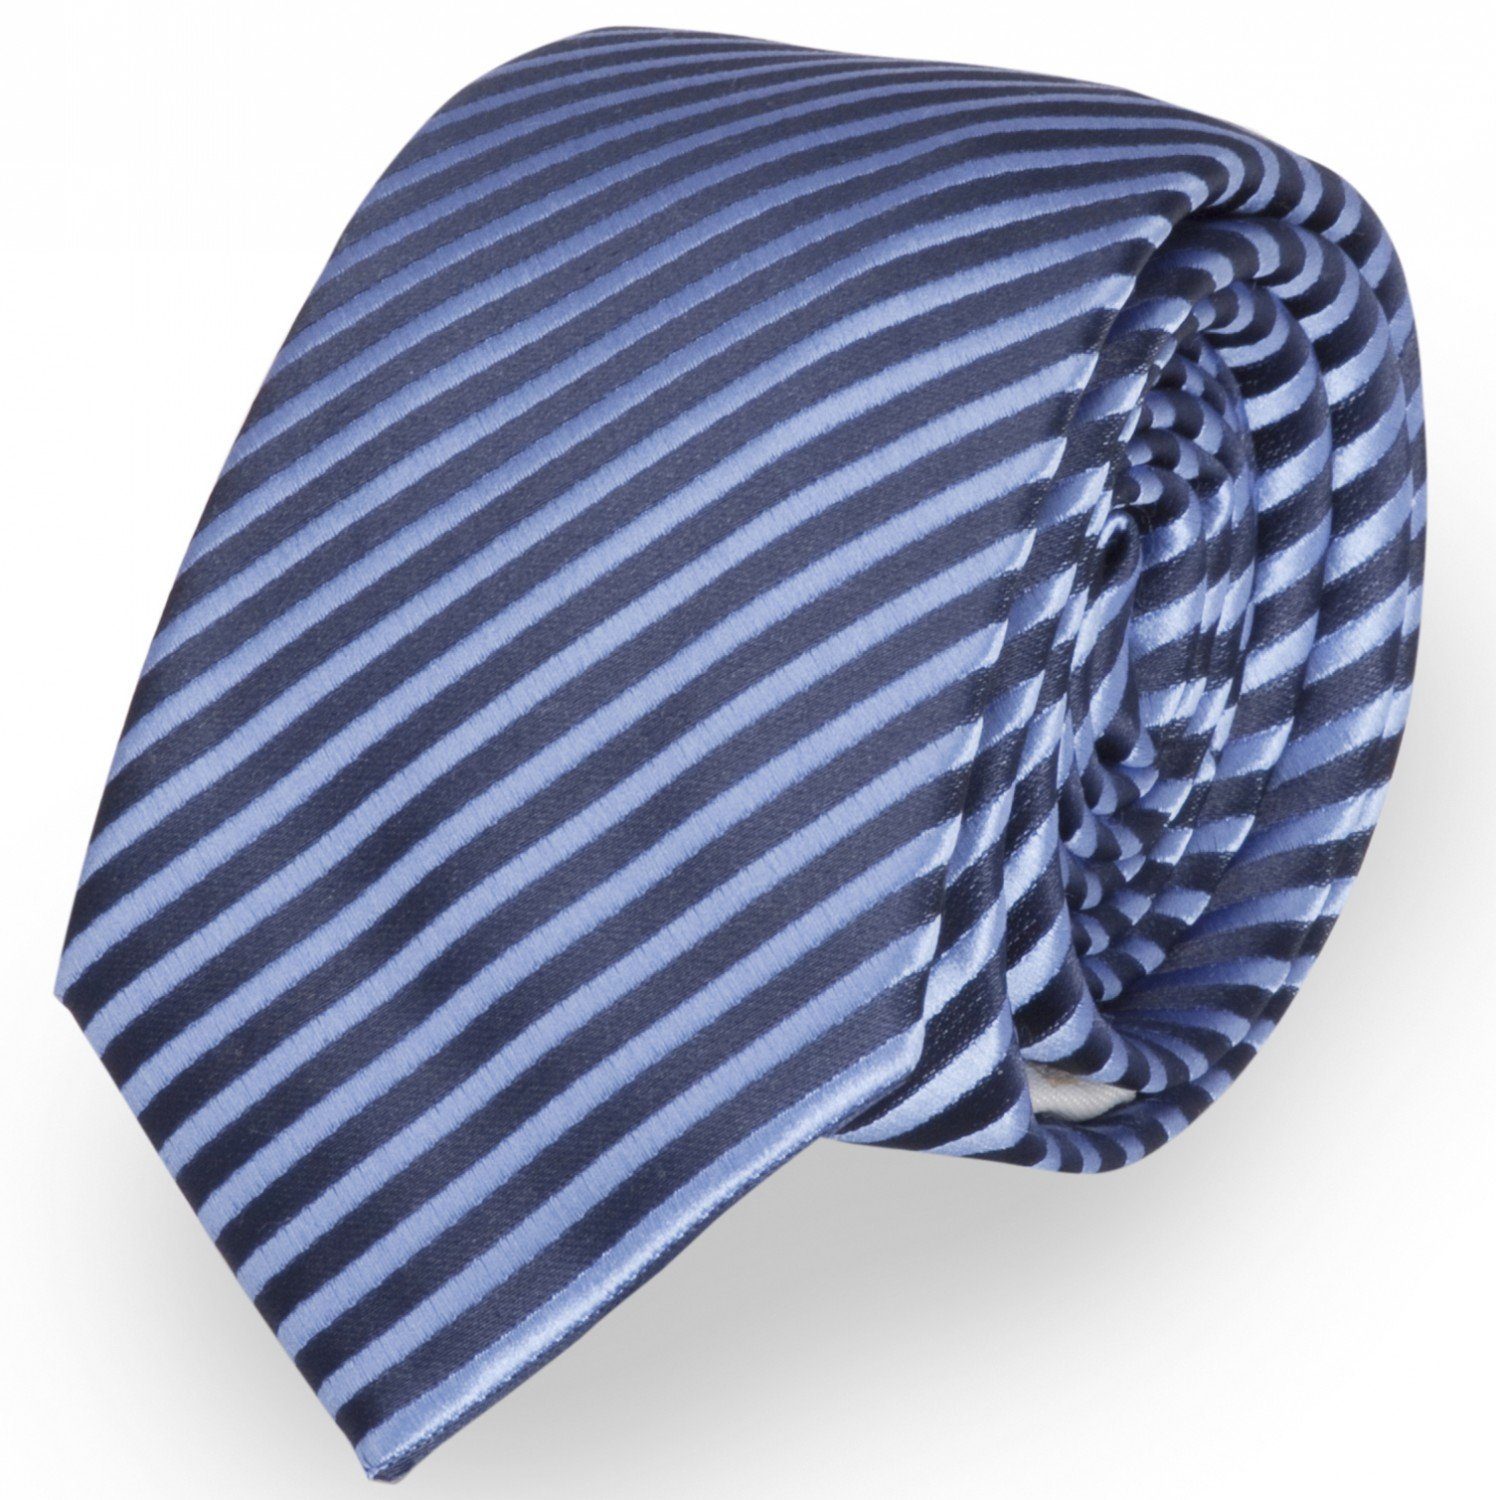 Fabio Farini Krawatte gestreifte Herren Krawatte - Tie mit Streifen in 6cm oder 8cm Breite (ohne Box, Gestreift) Breit (8cm), Dunkelblau/Navyblau